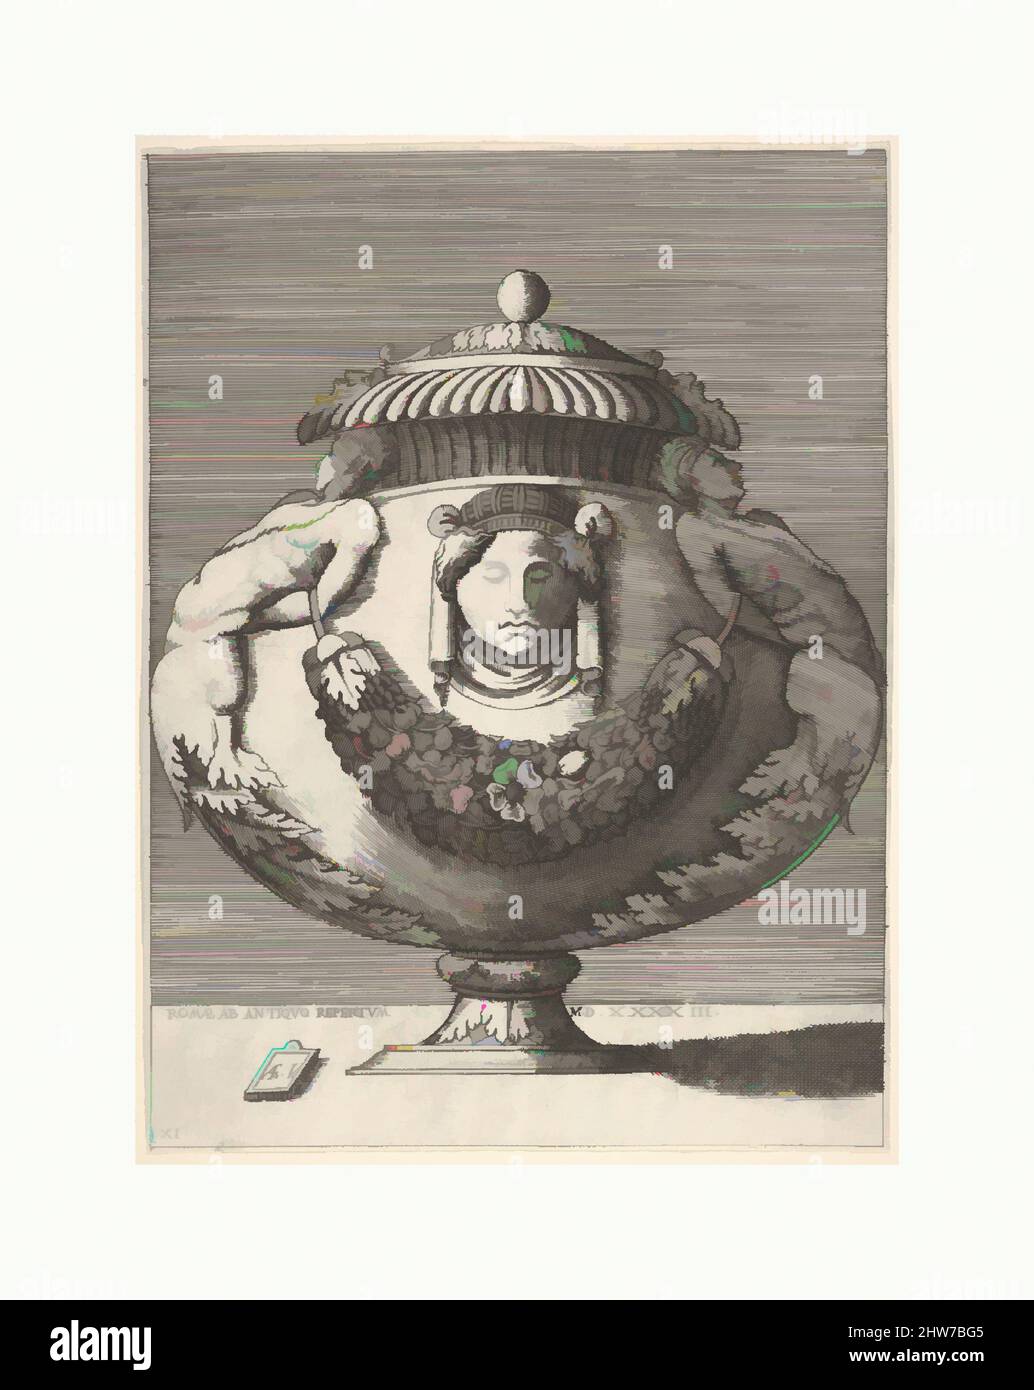 Kunst inspiriert von antiker, lidierter Urne mit hybriden männlichen Sphinxes und einer weiblichen Maske auf dem Körper, aus Vasen nach dem Antiken, 1543 oder danach, Gravur, erster oder zweiter Zustand, Bild: 10 3/8 x 7 11/16 Zoll (26,4 x 19,5 cm) innerhalb von Plattenmarkierung auf allen Seiten abgeschnitten, Enea Vico (Italienisch, Parma 1523, Classic Works modernisiert von Artotop mit einem Schuss Moderne. Formen, Farbe und Wert, auffällige visuelle Wirkung auf Kunst. Emotionen durch Freiheit von Kunstwerken auf zeitgemäße Weise. Eine zeitlose Botschaft, die eine wild kreative neue Richtung verfolgt. Künstler, die sich dem digitalen Medium zuwenden und die Artotop NFT erschaffen Stockfoto